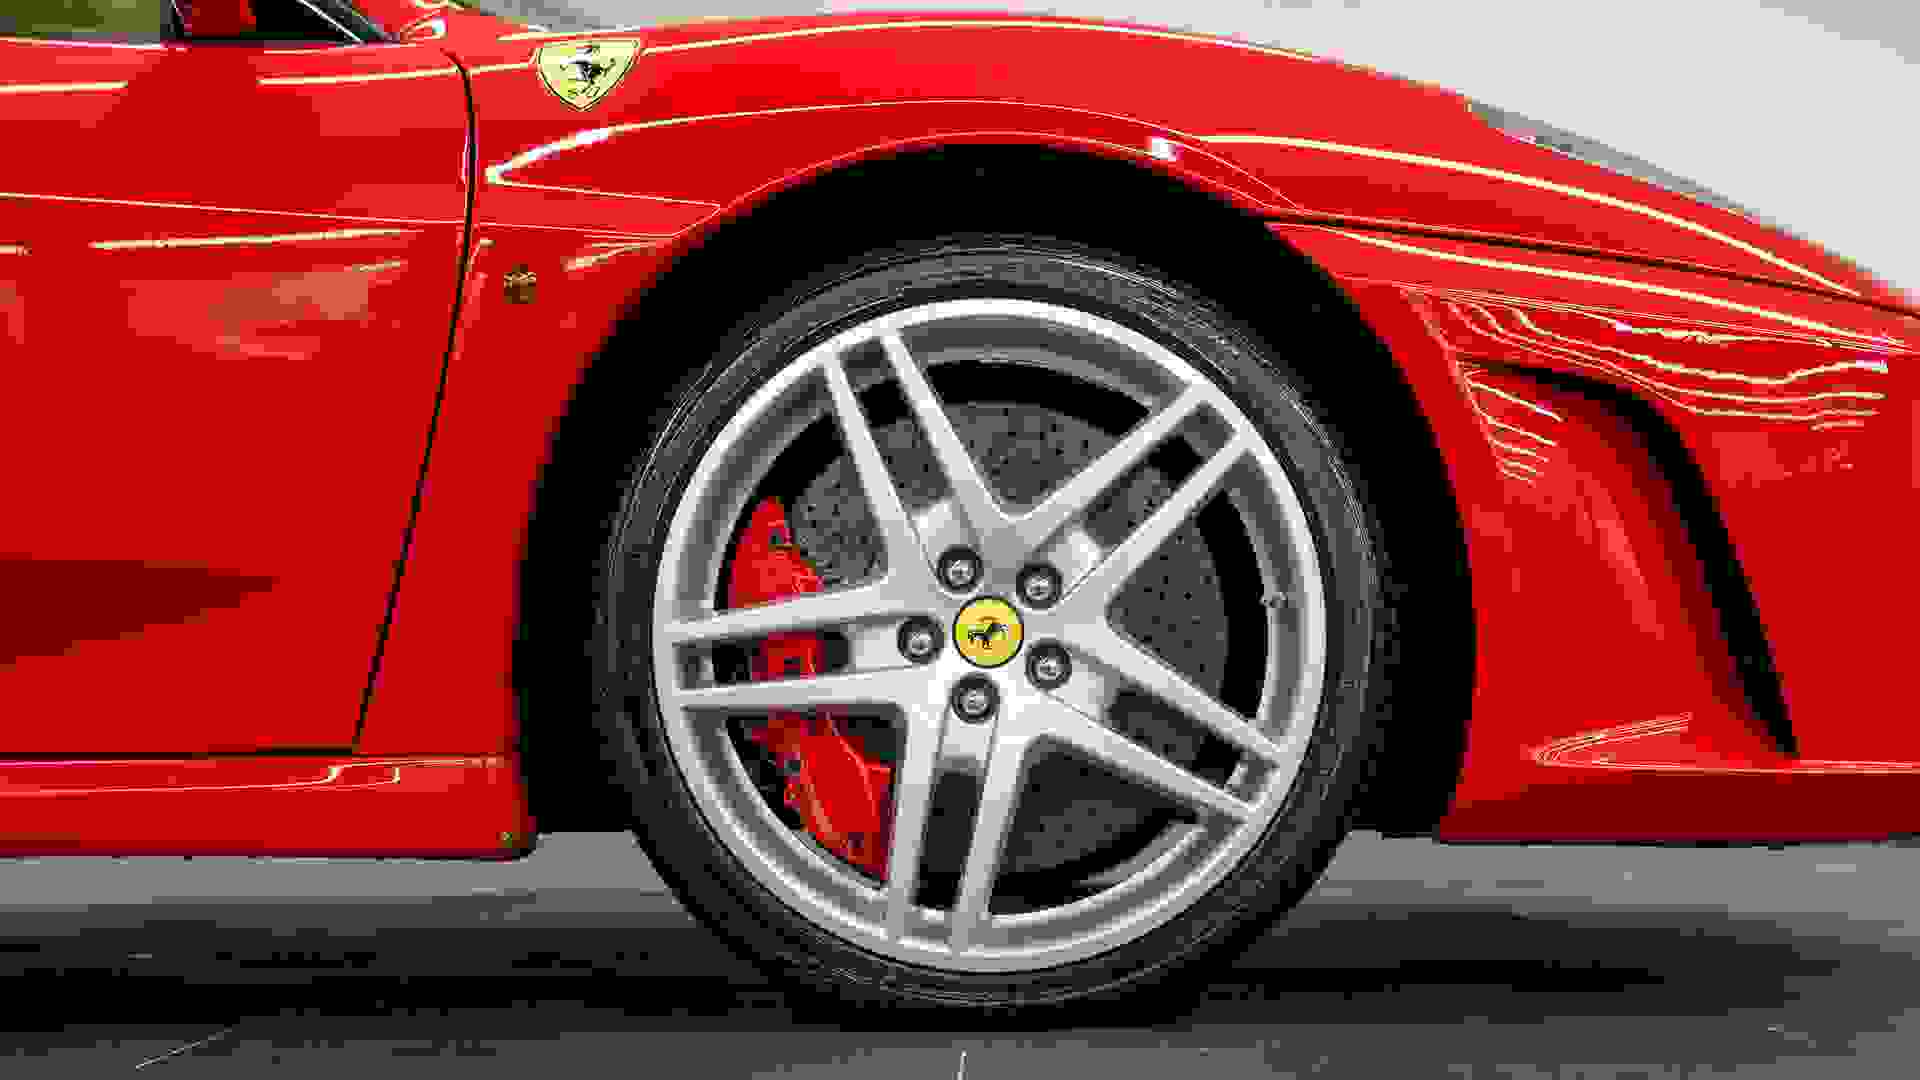 Ferrari F430 Photo d0b9a082-0af6-4a67-b3d1-54c3a903f0b6.jpg